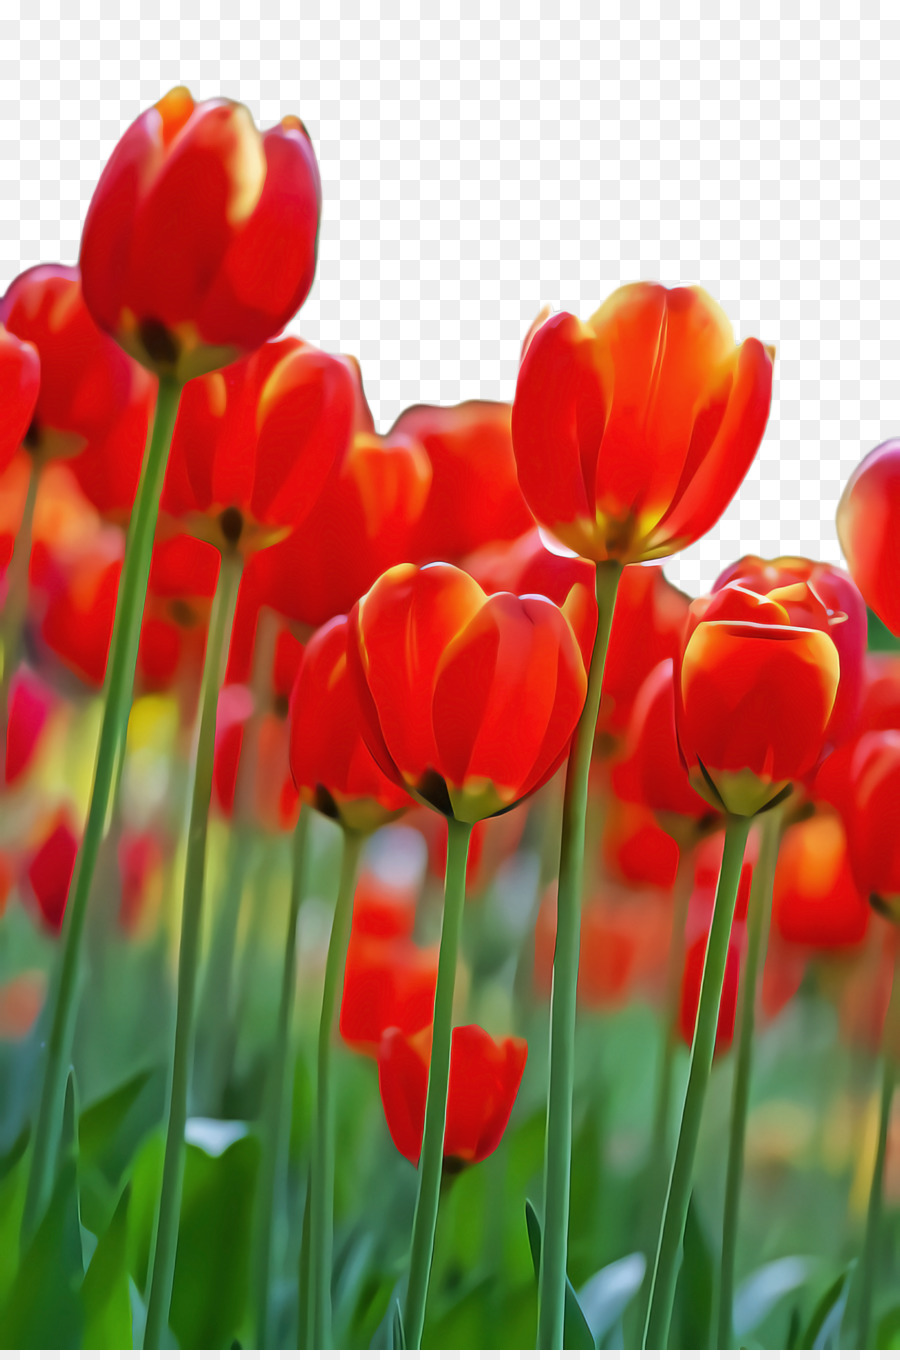 Hình nền hoa tulip cho máy tính - png tải về - Miễn phí trong suốt ...